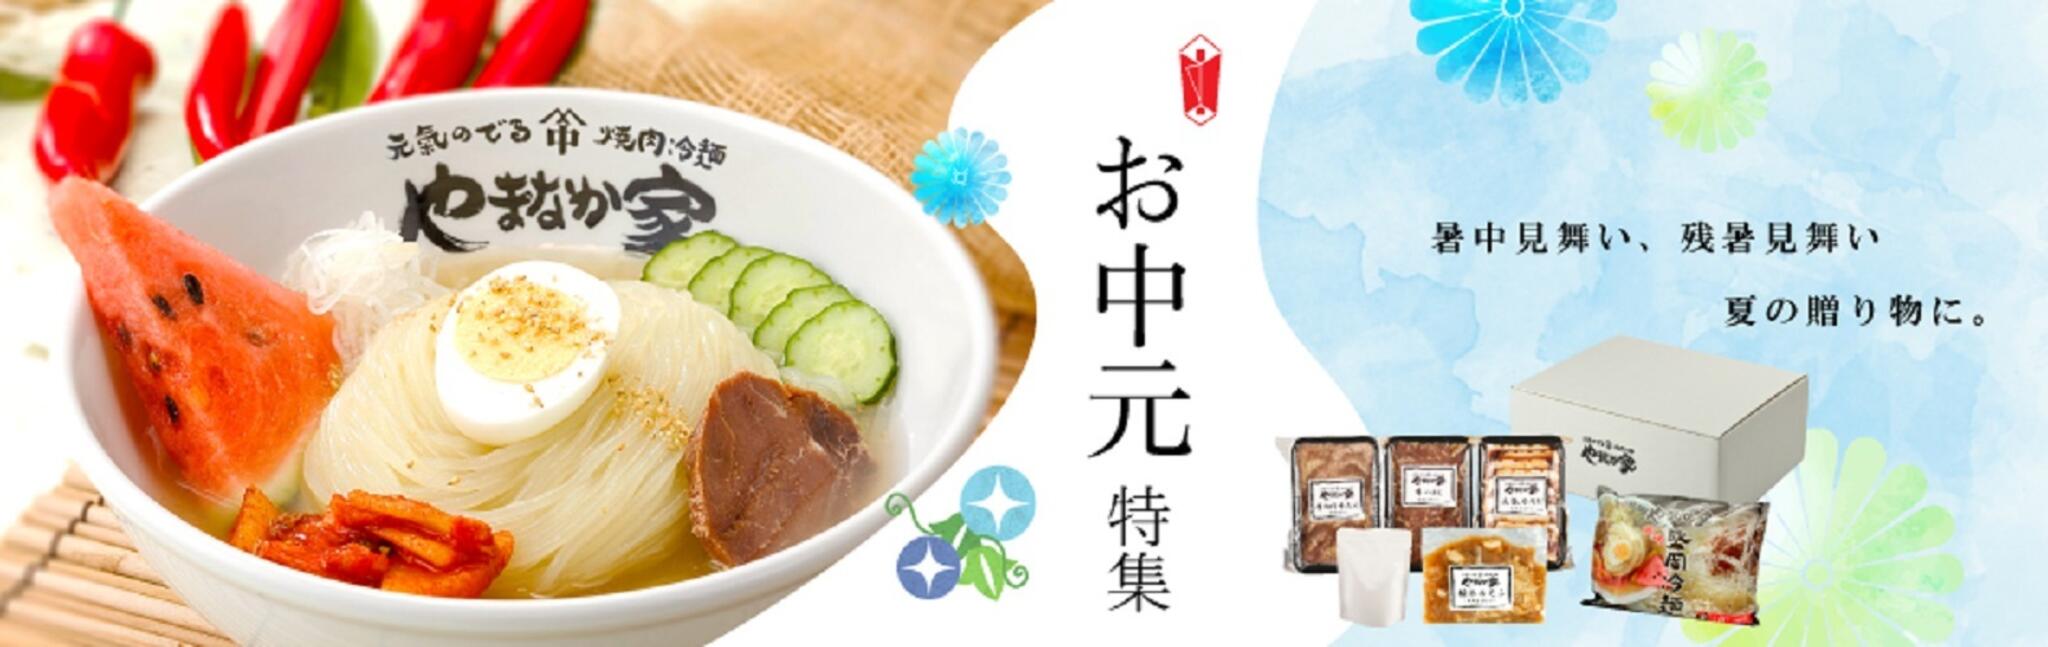 焼肉冷麺やまなか家 上田バイパス店からのお知らせ(《やまなか家のお中元》)に関する写真